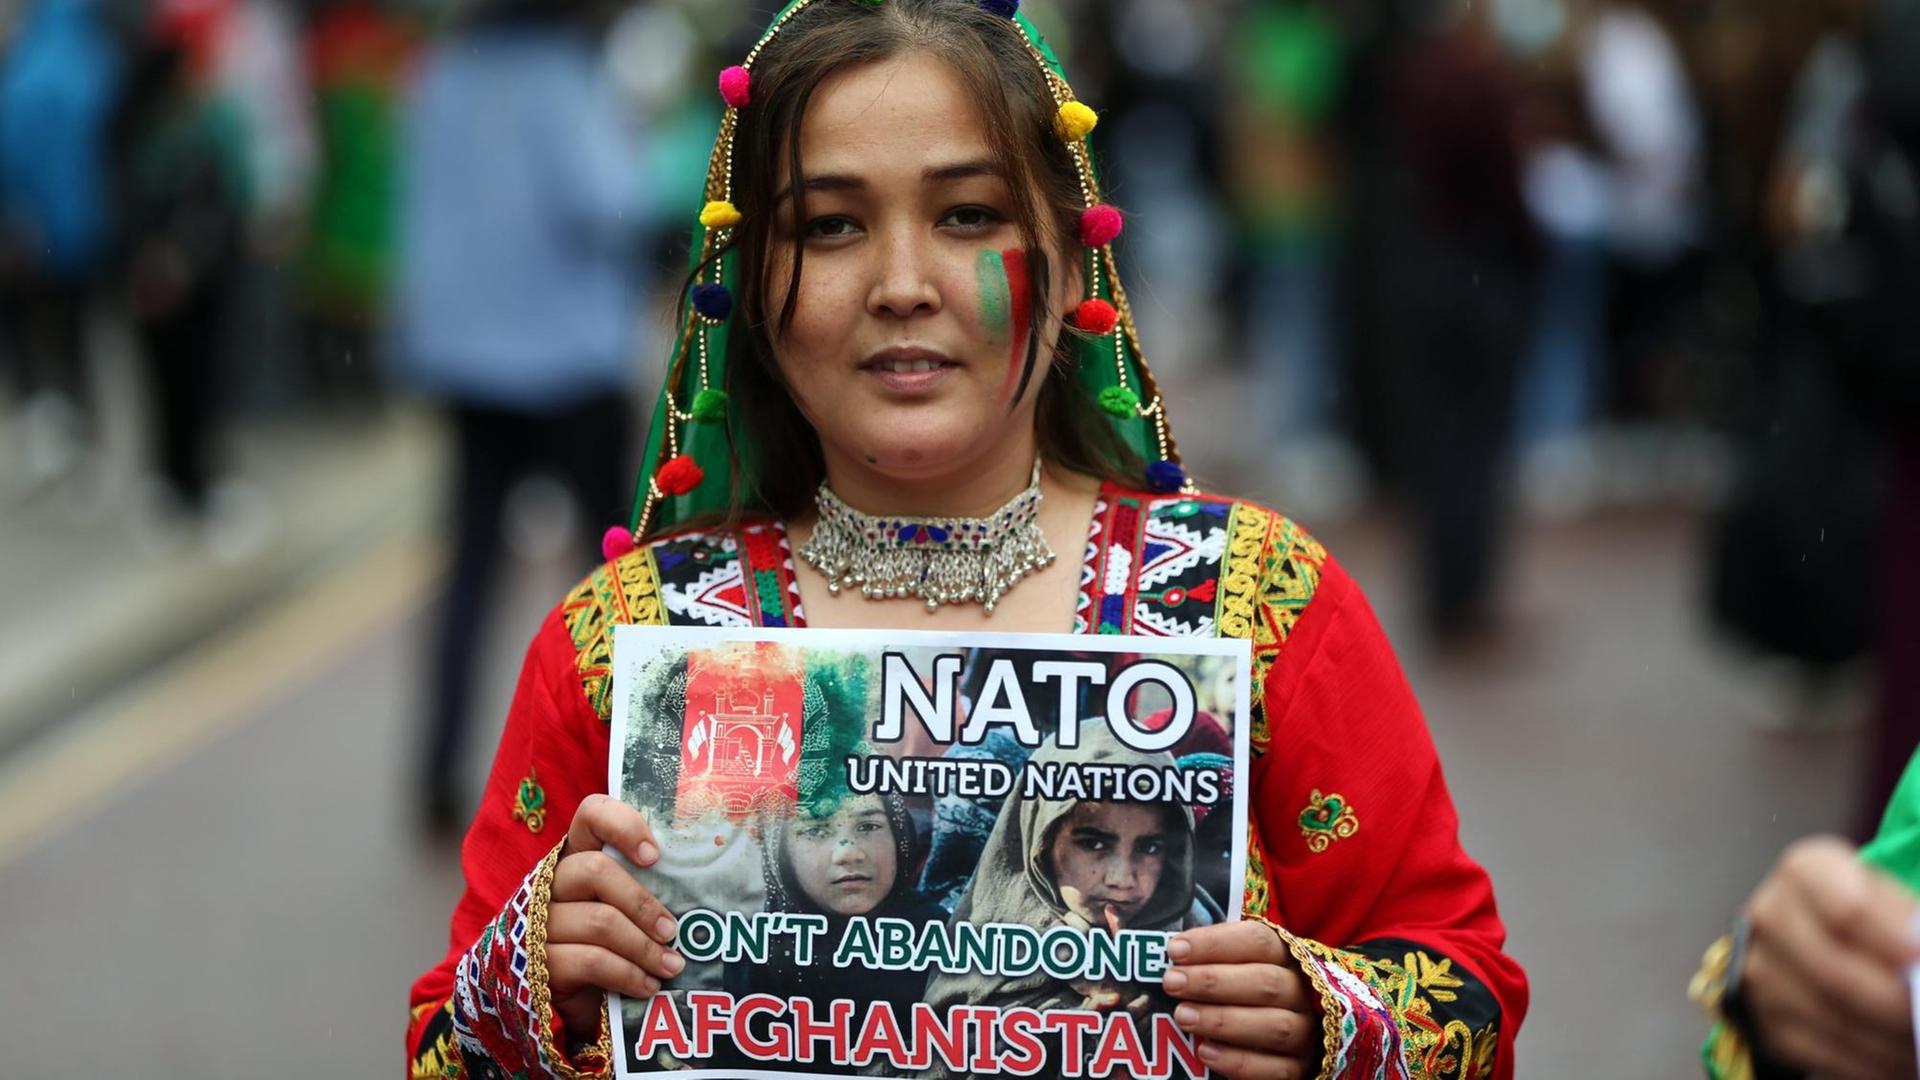 Eine Frau hält ein Schild hoch, auf dem sie die NATO zur Unterstützung für Afghanistan auffordert